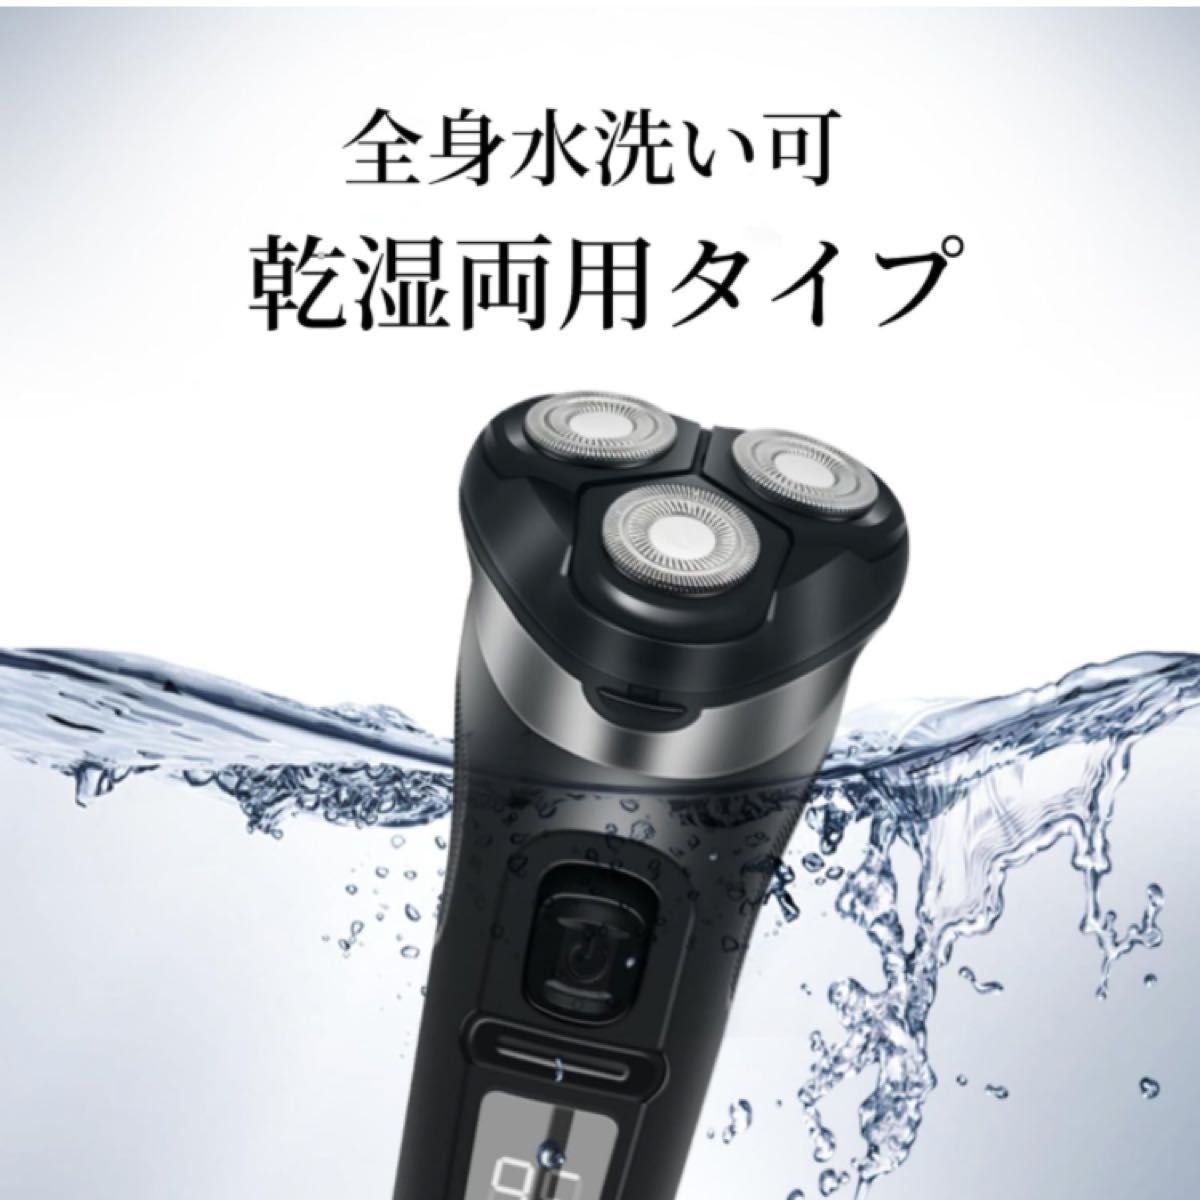 シェーバー メンズ 電気シェーバー ひげそり 3枚刃 回転式 USB充電式 防水 お風呂剃り可 LCDディスプレイ表示 ロック機能